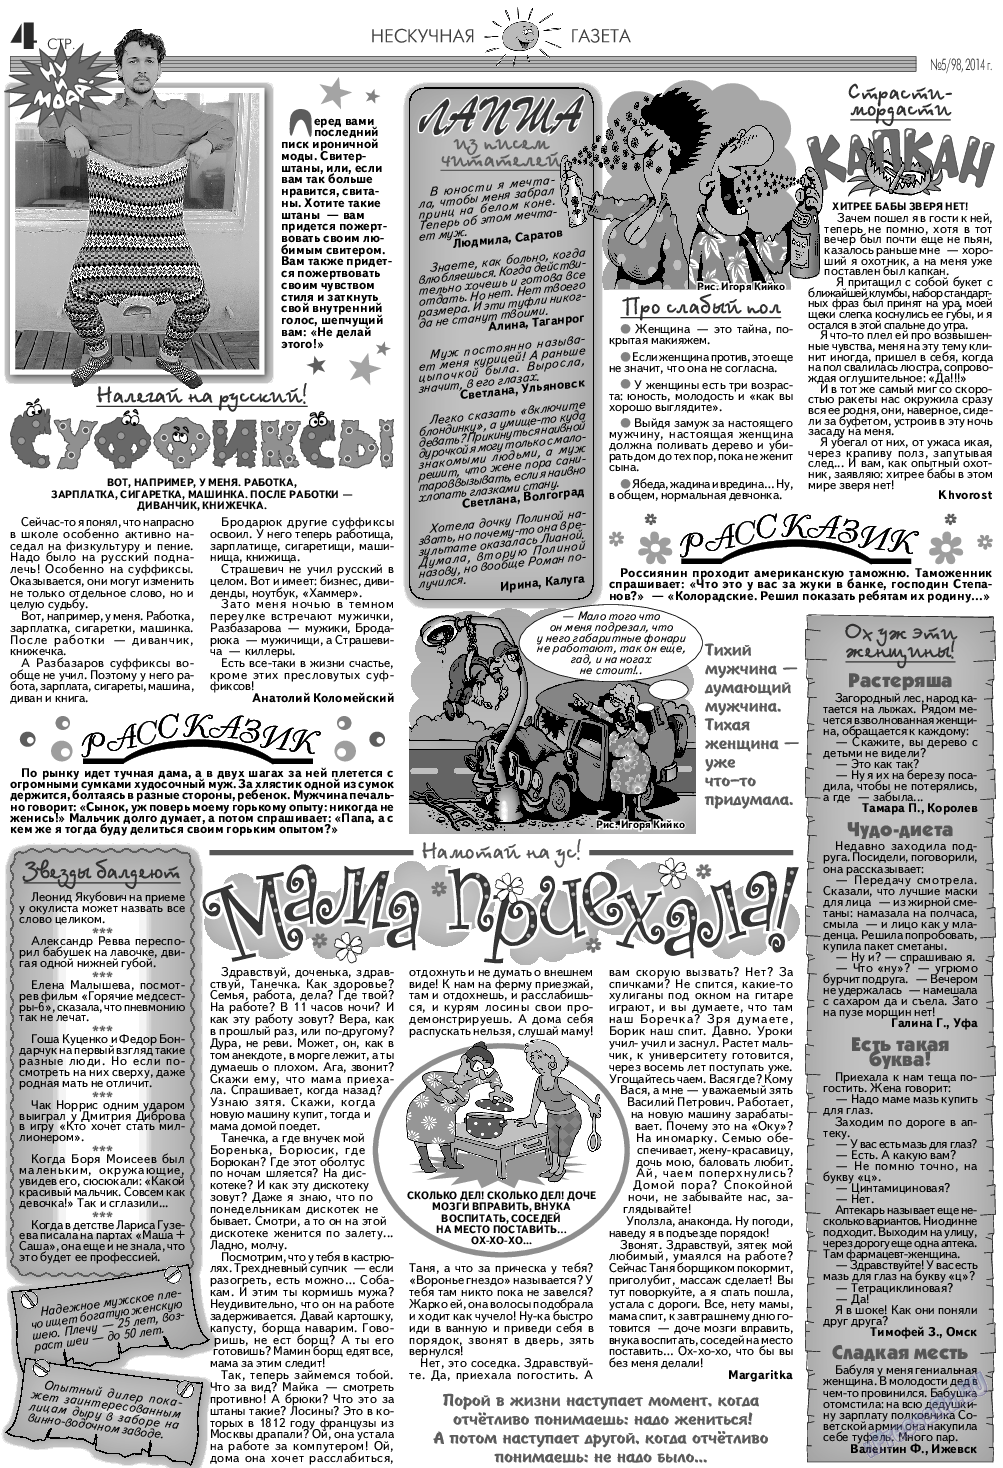 Нескучная газета (журнал). 2014 год, номер 5, стр. 4